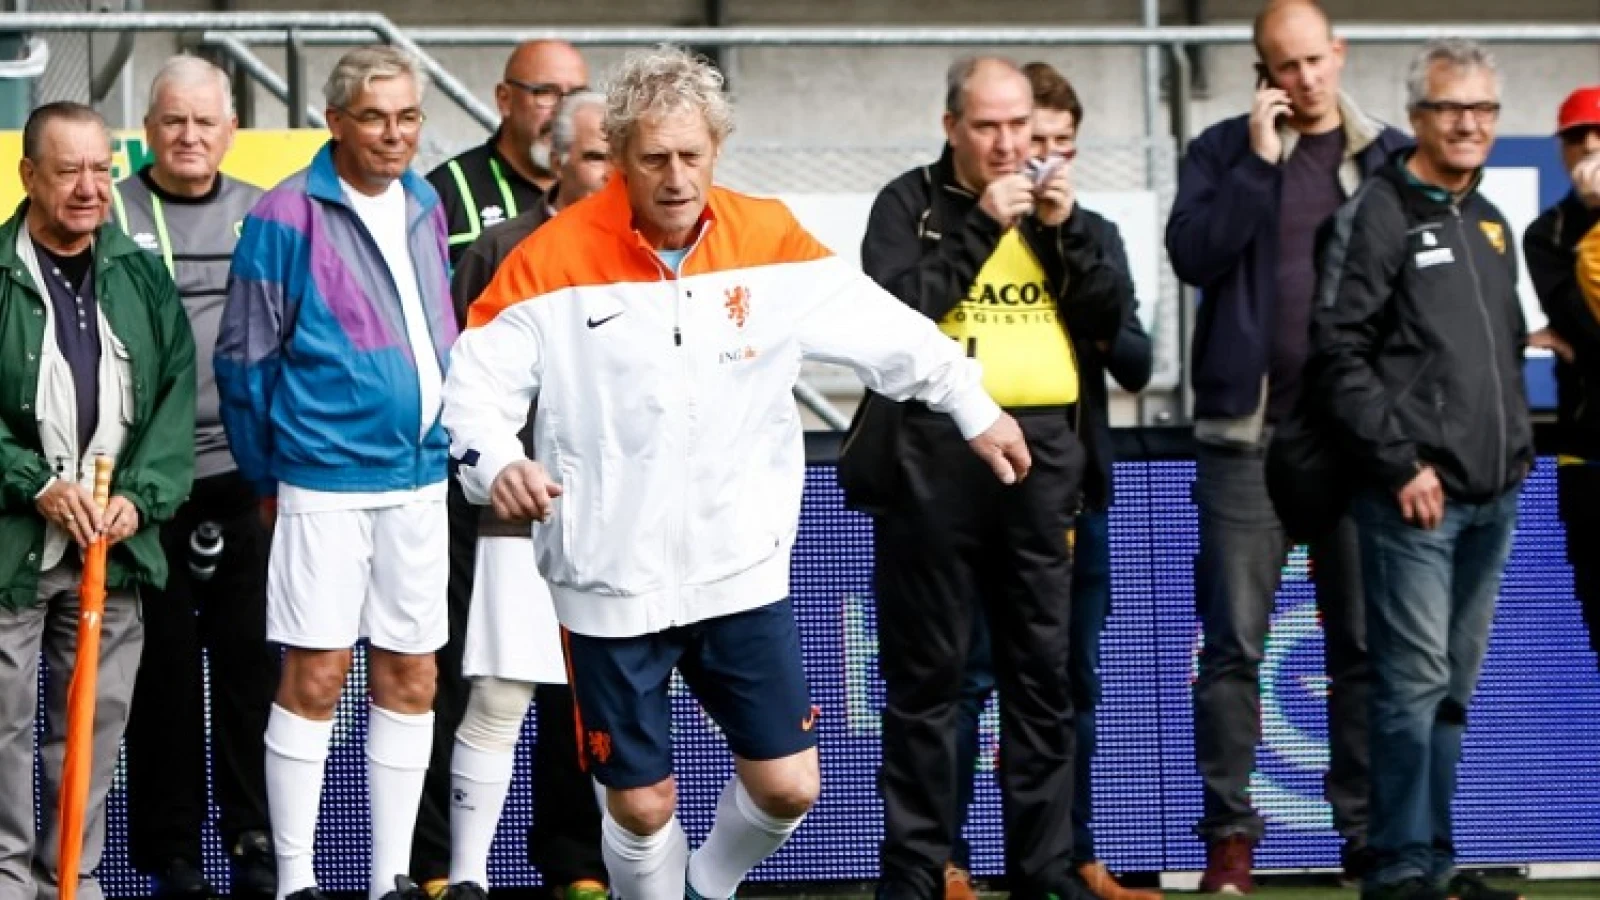 Kist maakt zich zorgen om Feyenoord: 'Dat is niet de eerste keer'